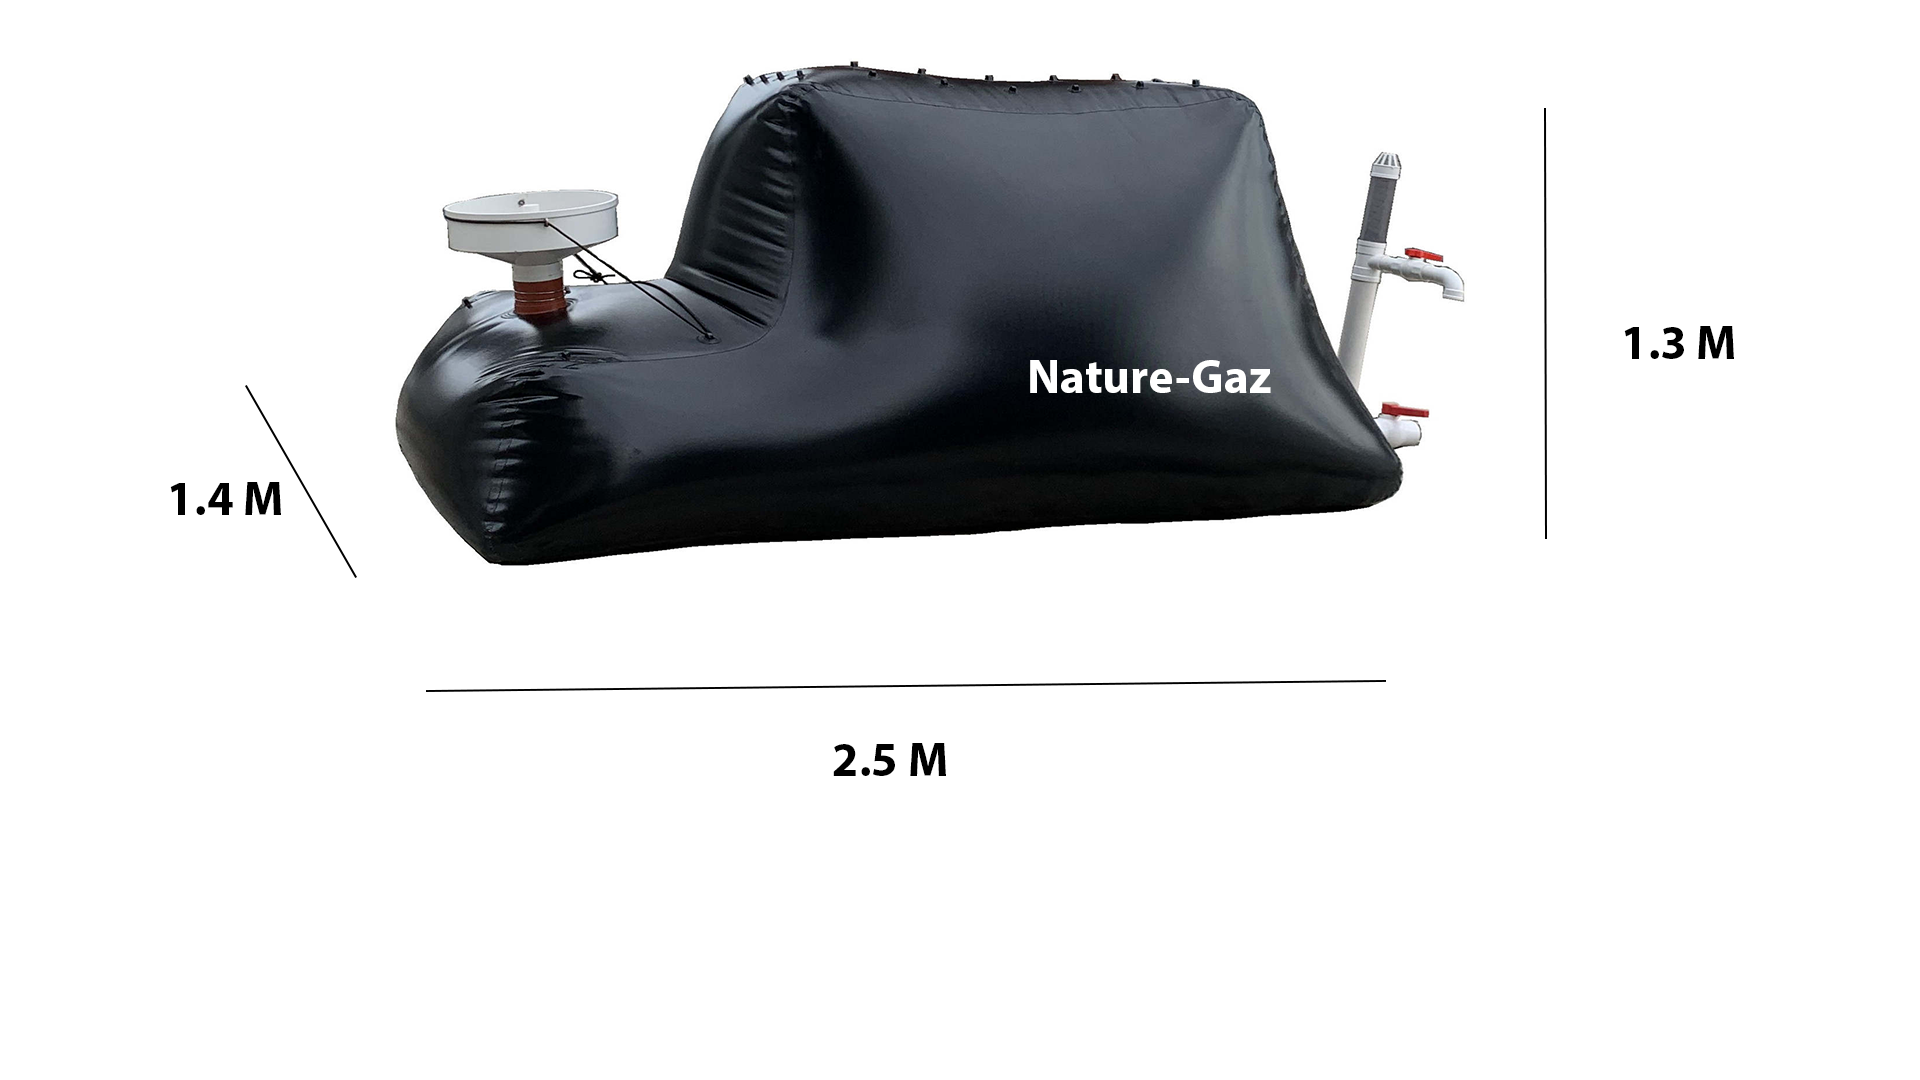 Méthaniseur domestique 3 m3 Nature-gaz avec réchaud, production de biogaz. Biodigesteur